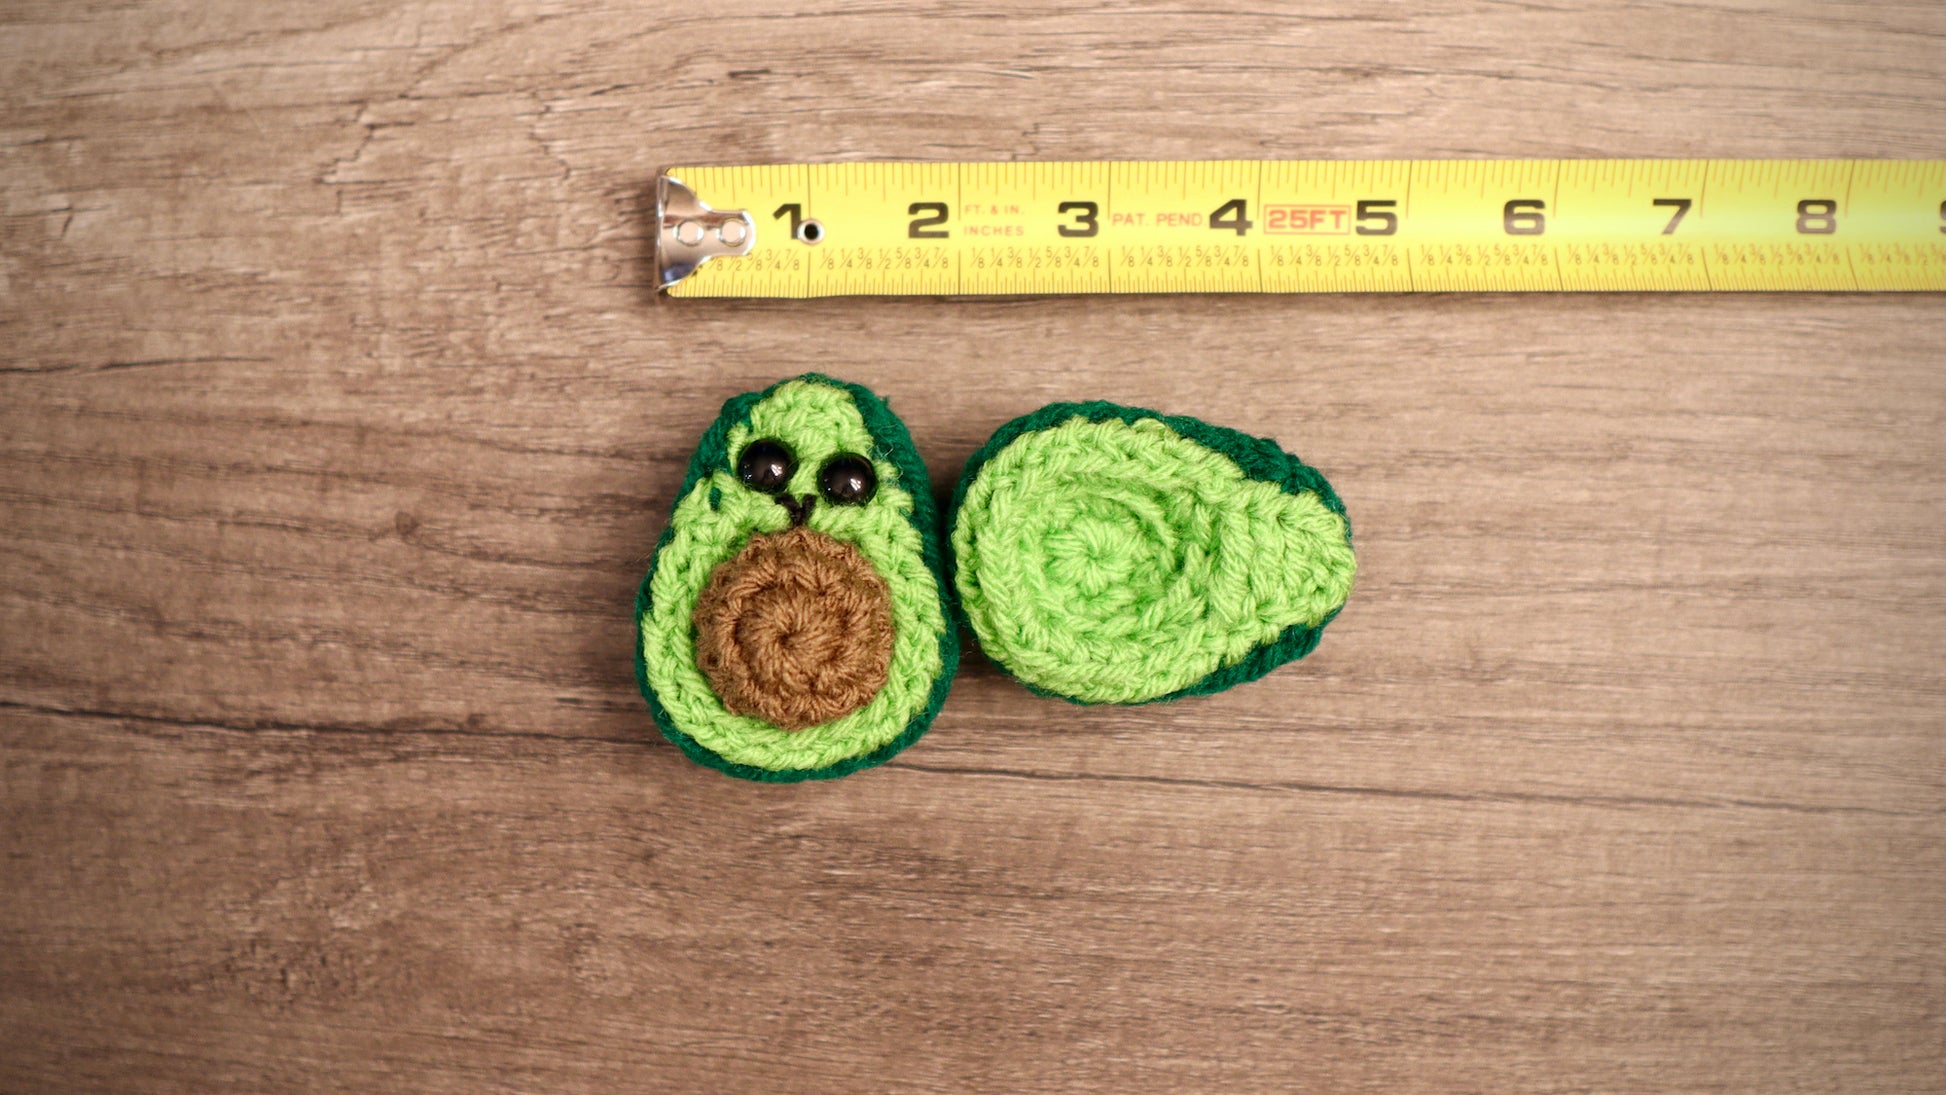 Crochet Avocado Green Sized Against Ruler